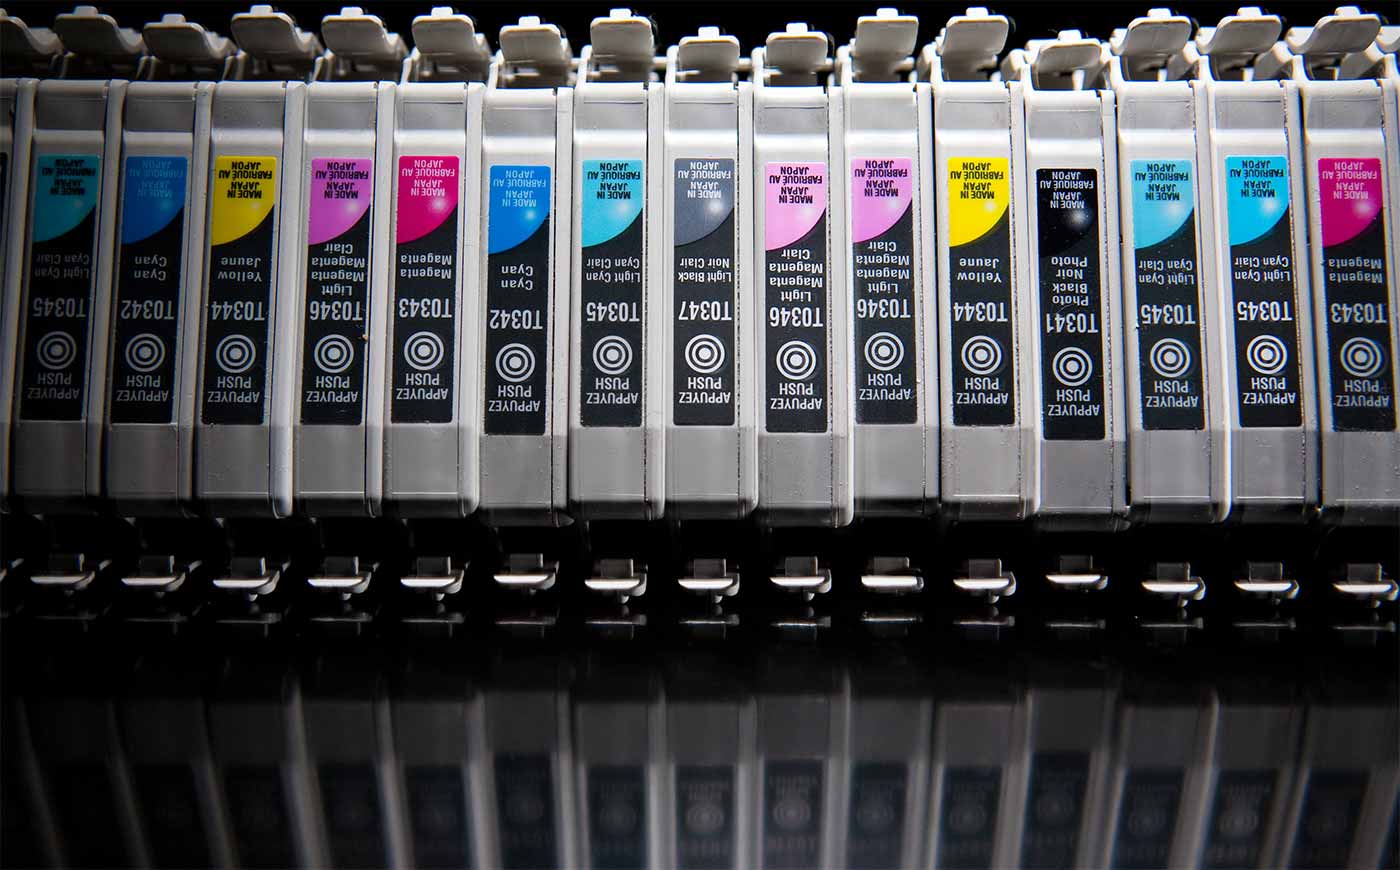 Used ink cartridges.